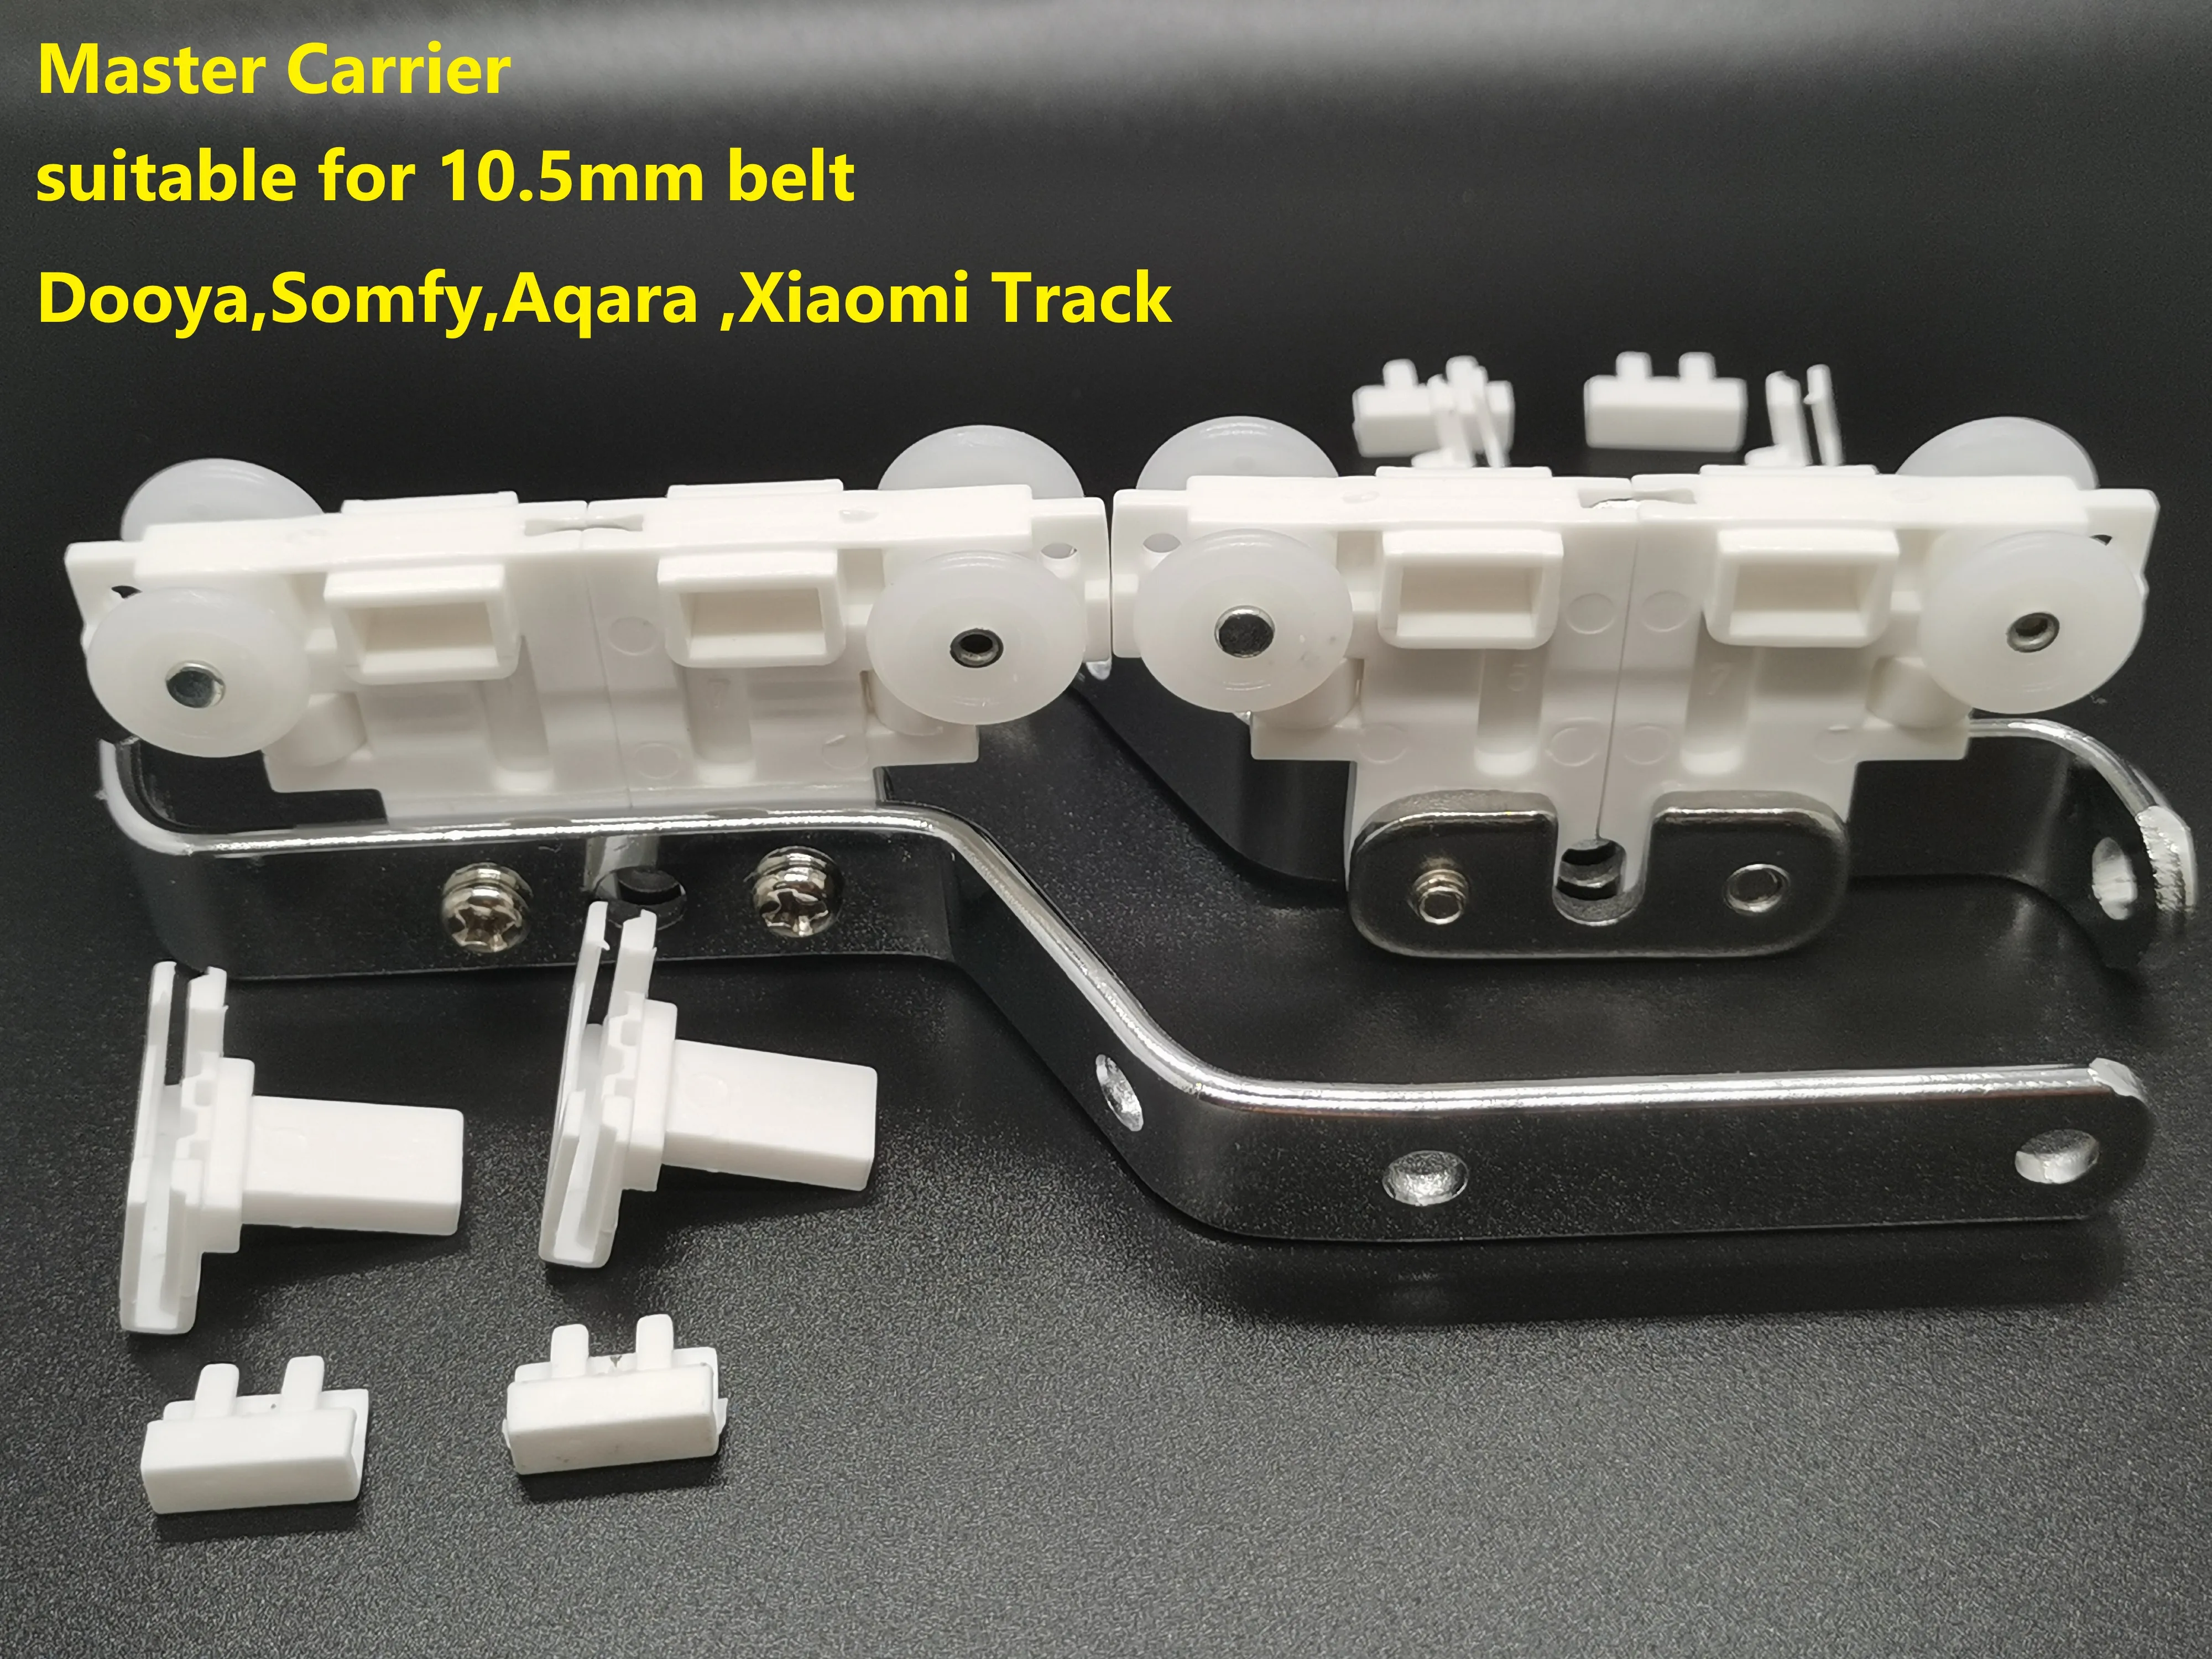 

2 шт., электрические крепления для штор Dooya,Somfy,Aqara ,Xiaomi. Два вида шкива, подходящие для ремня 10,5 мм или 11,5 мм.